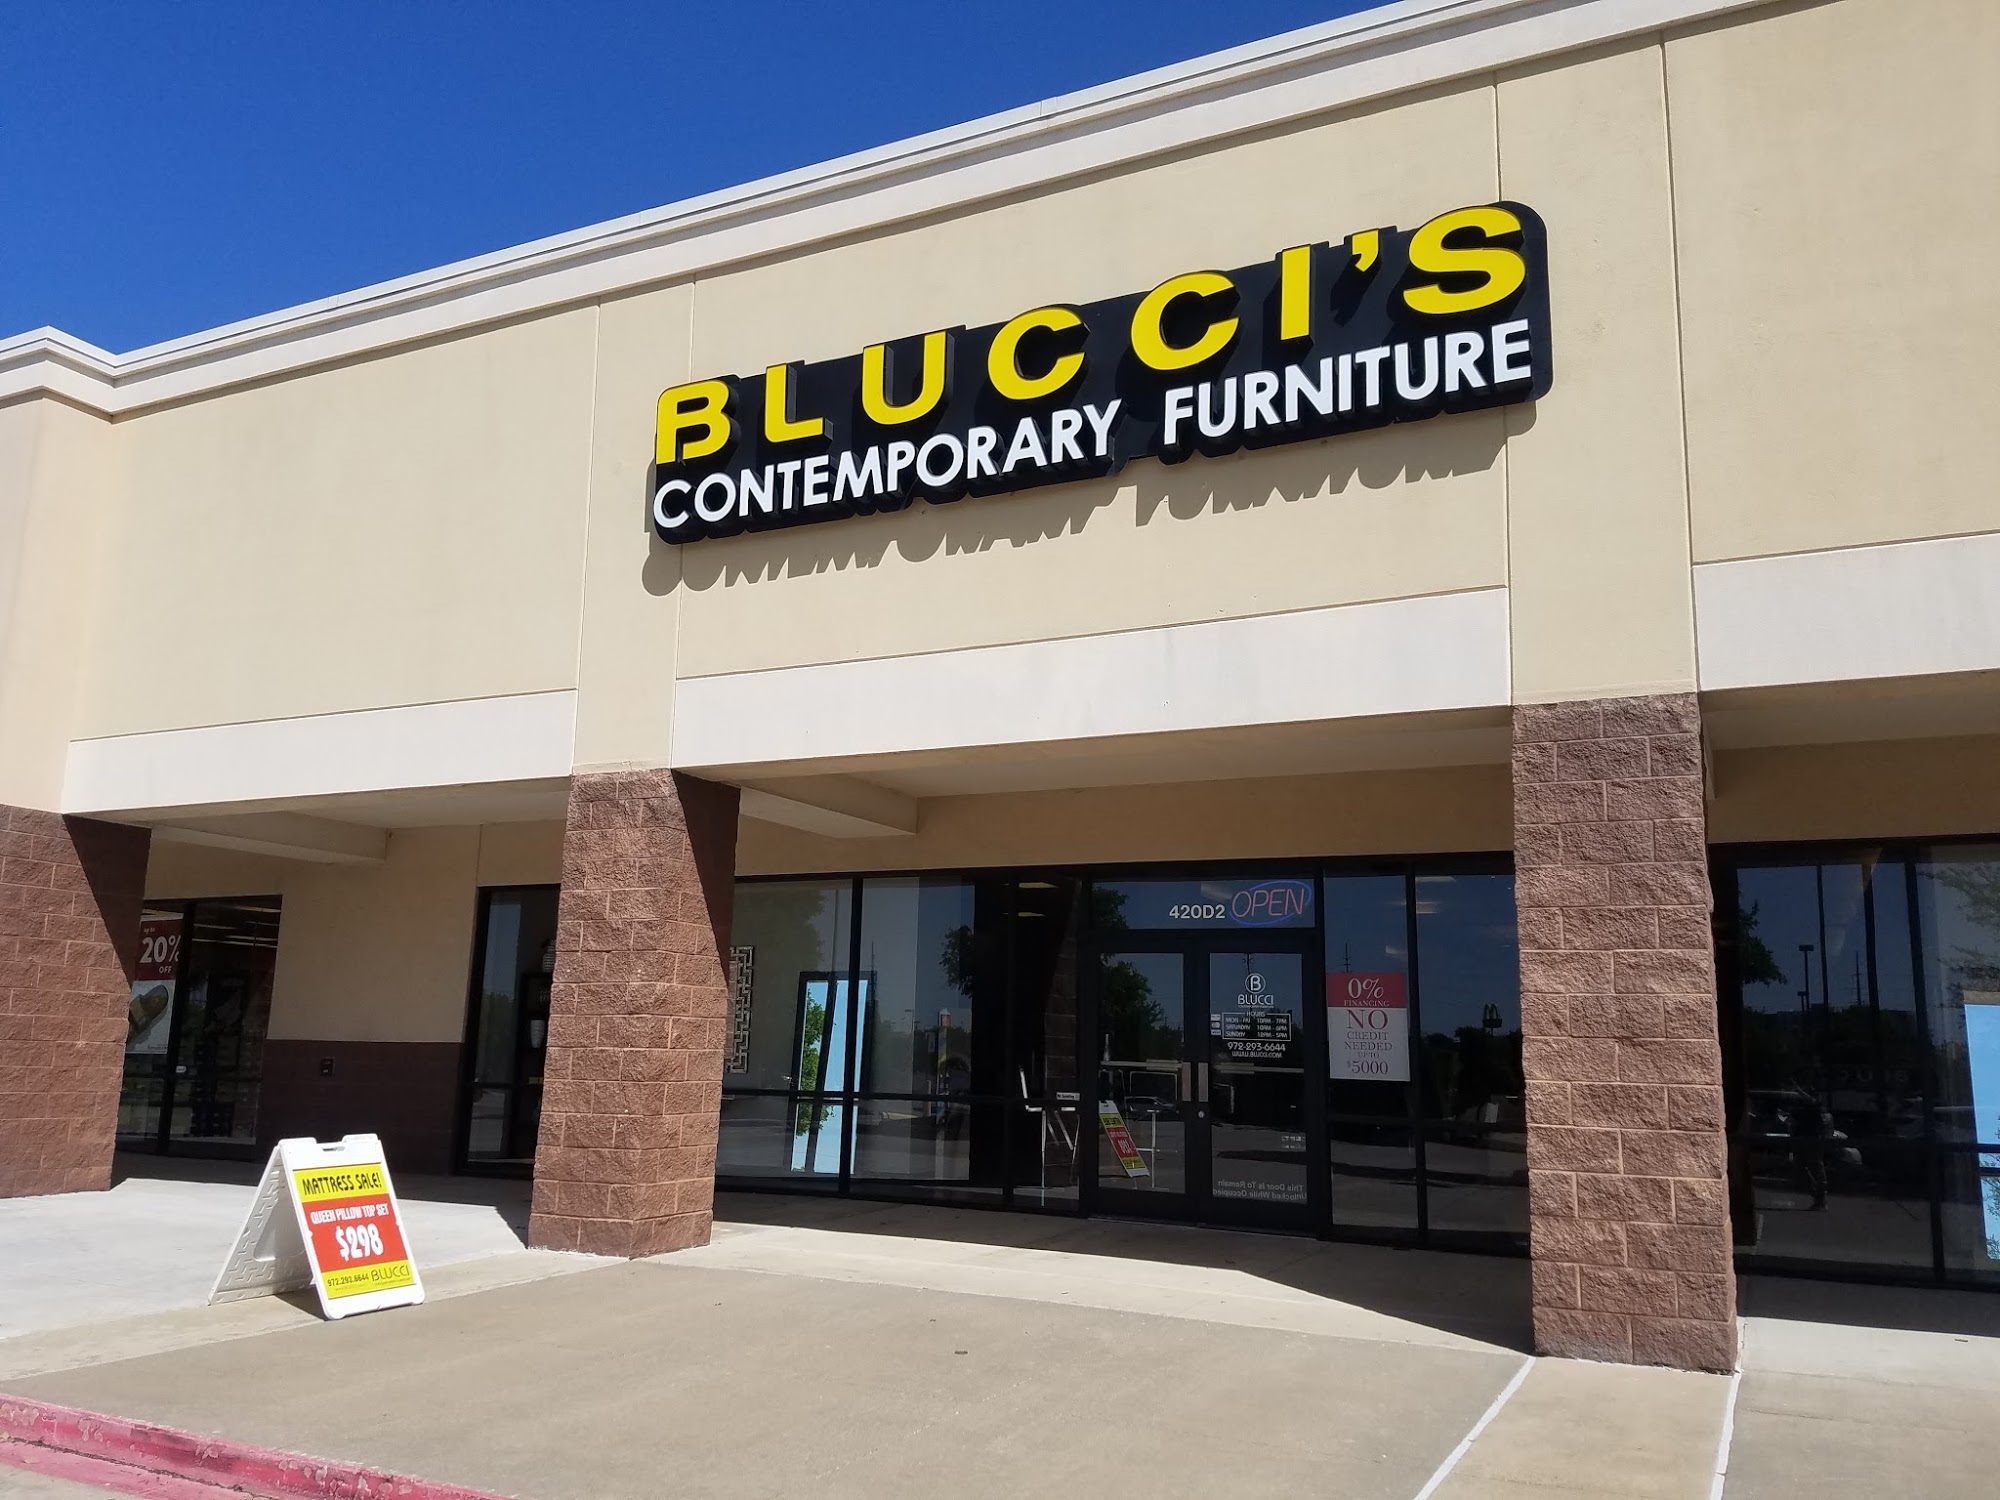 Blucci Contemporary Furniture